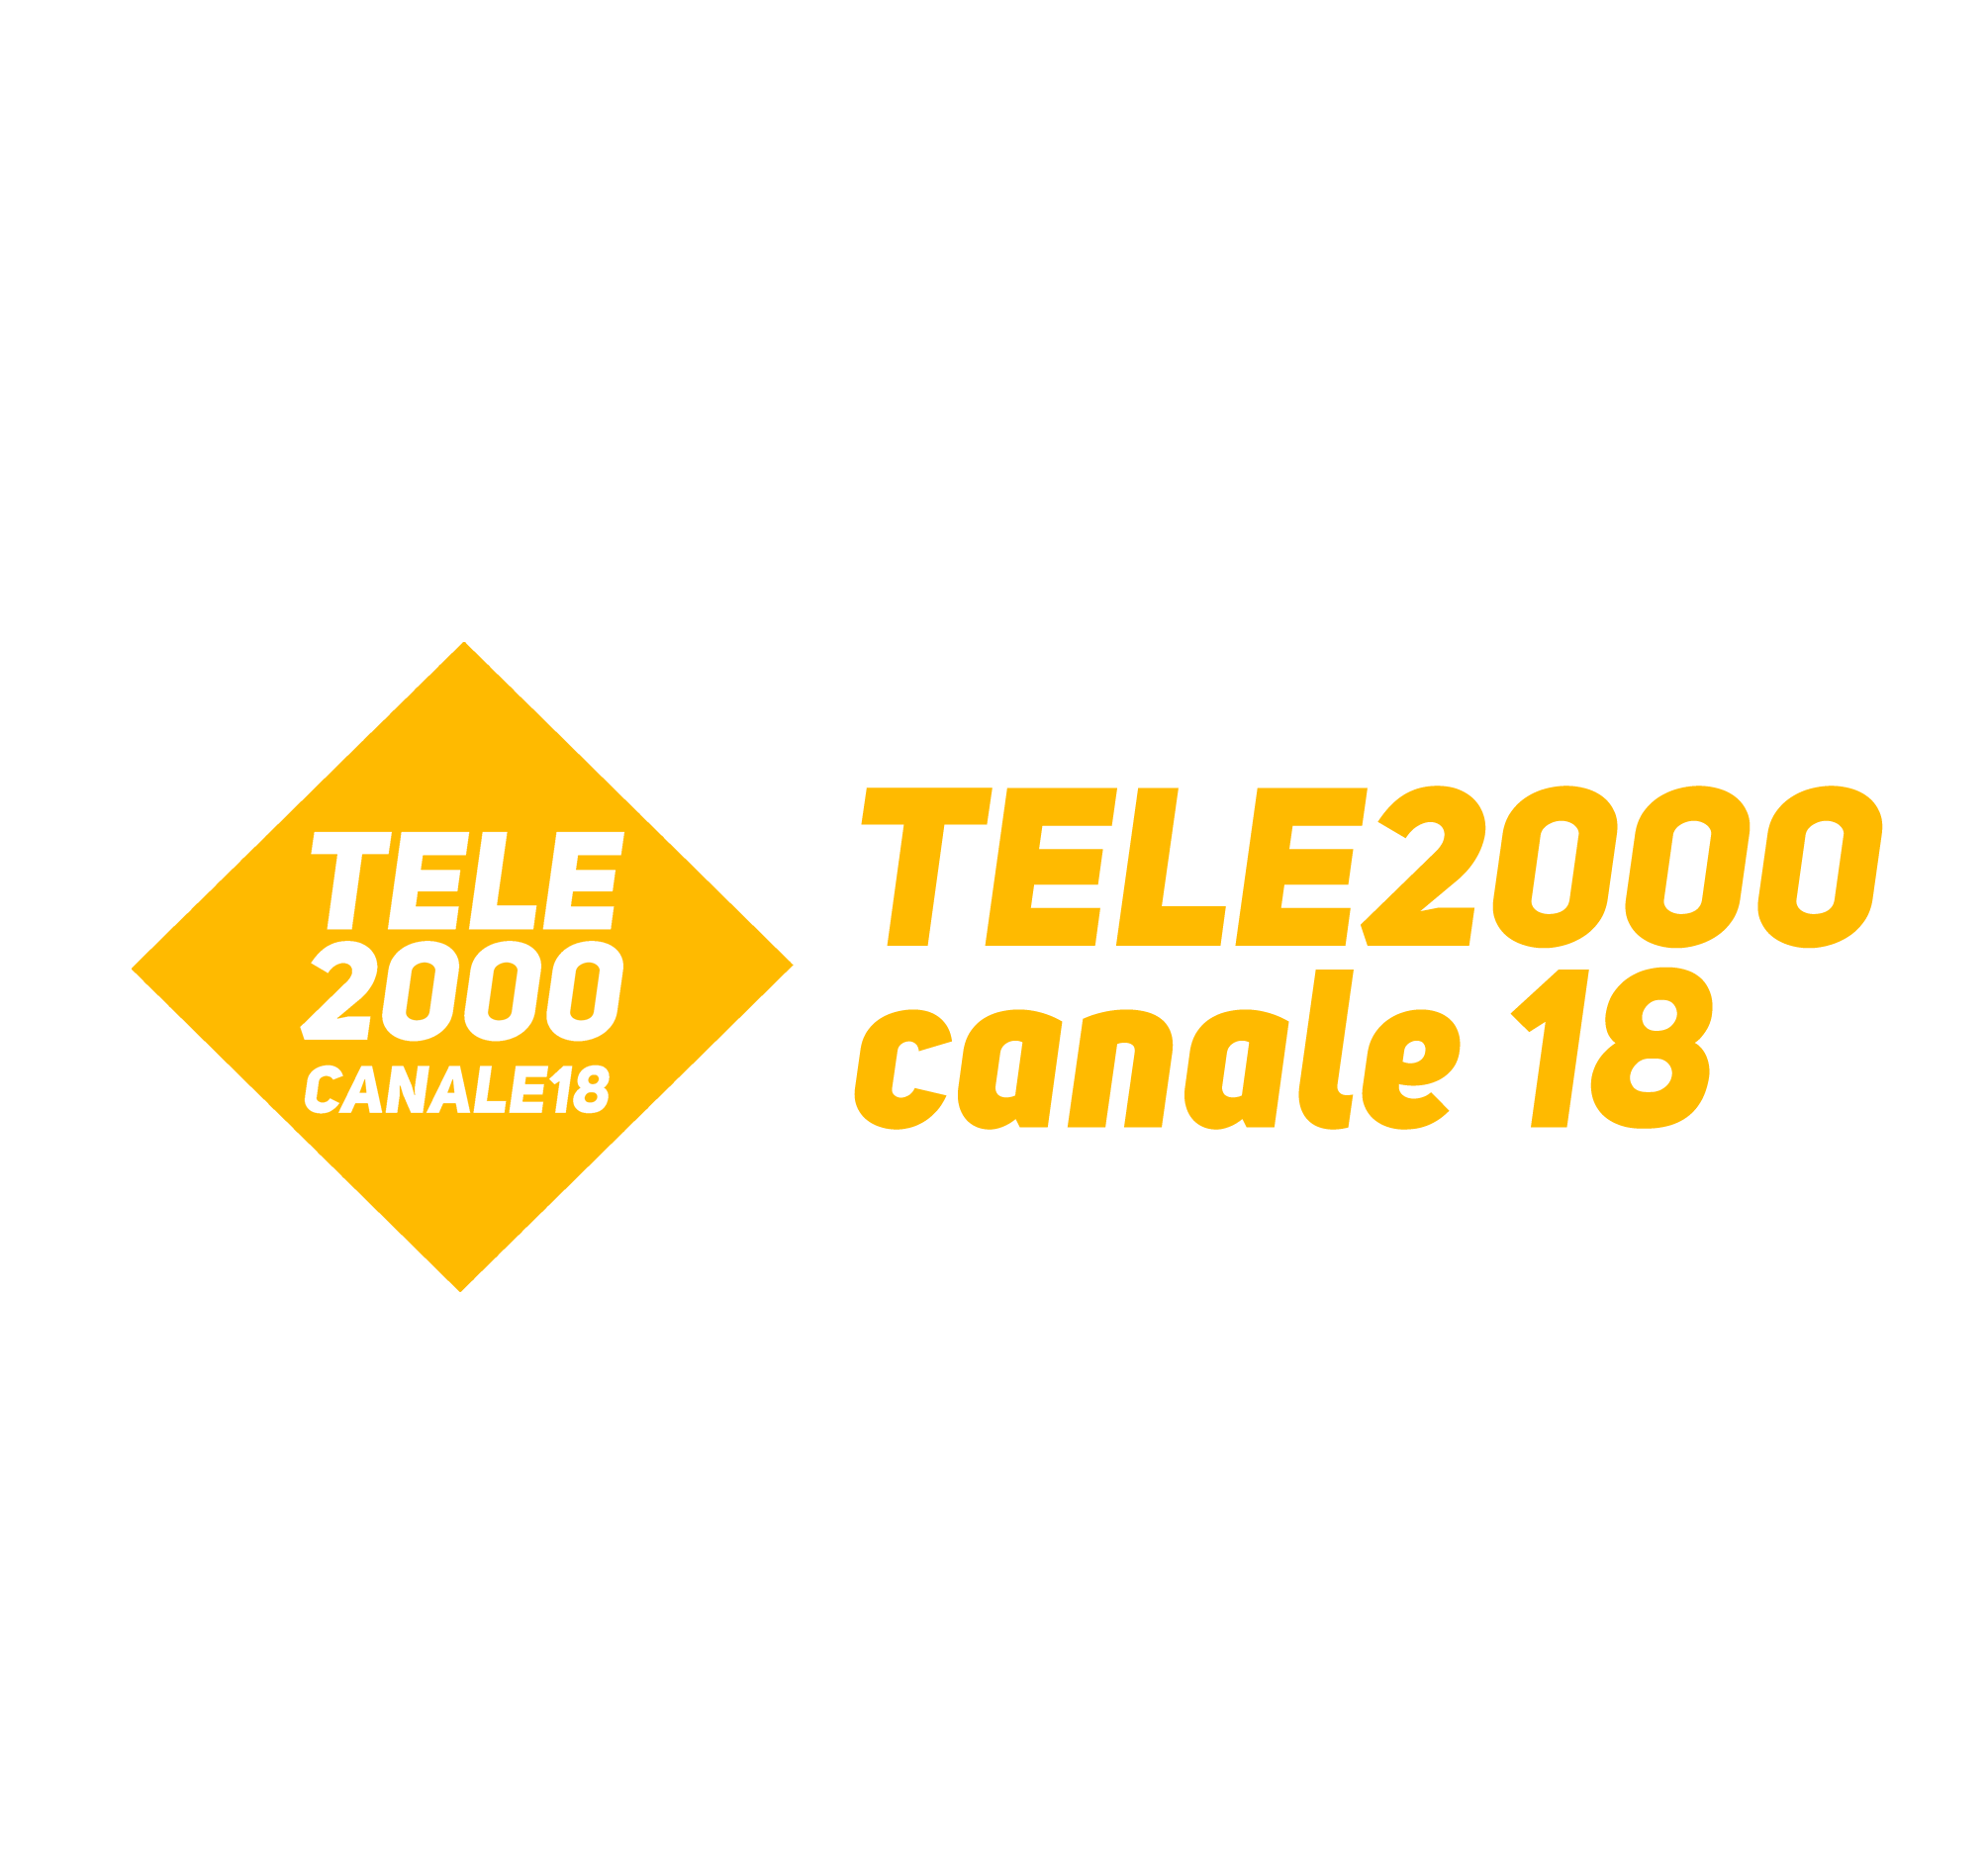 TELE2000